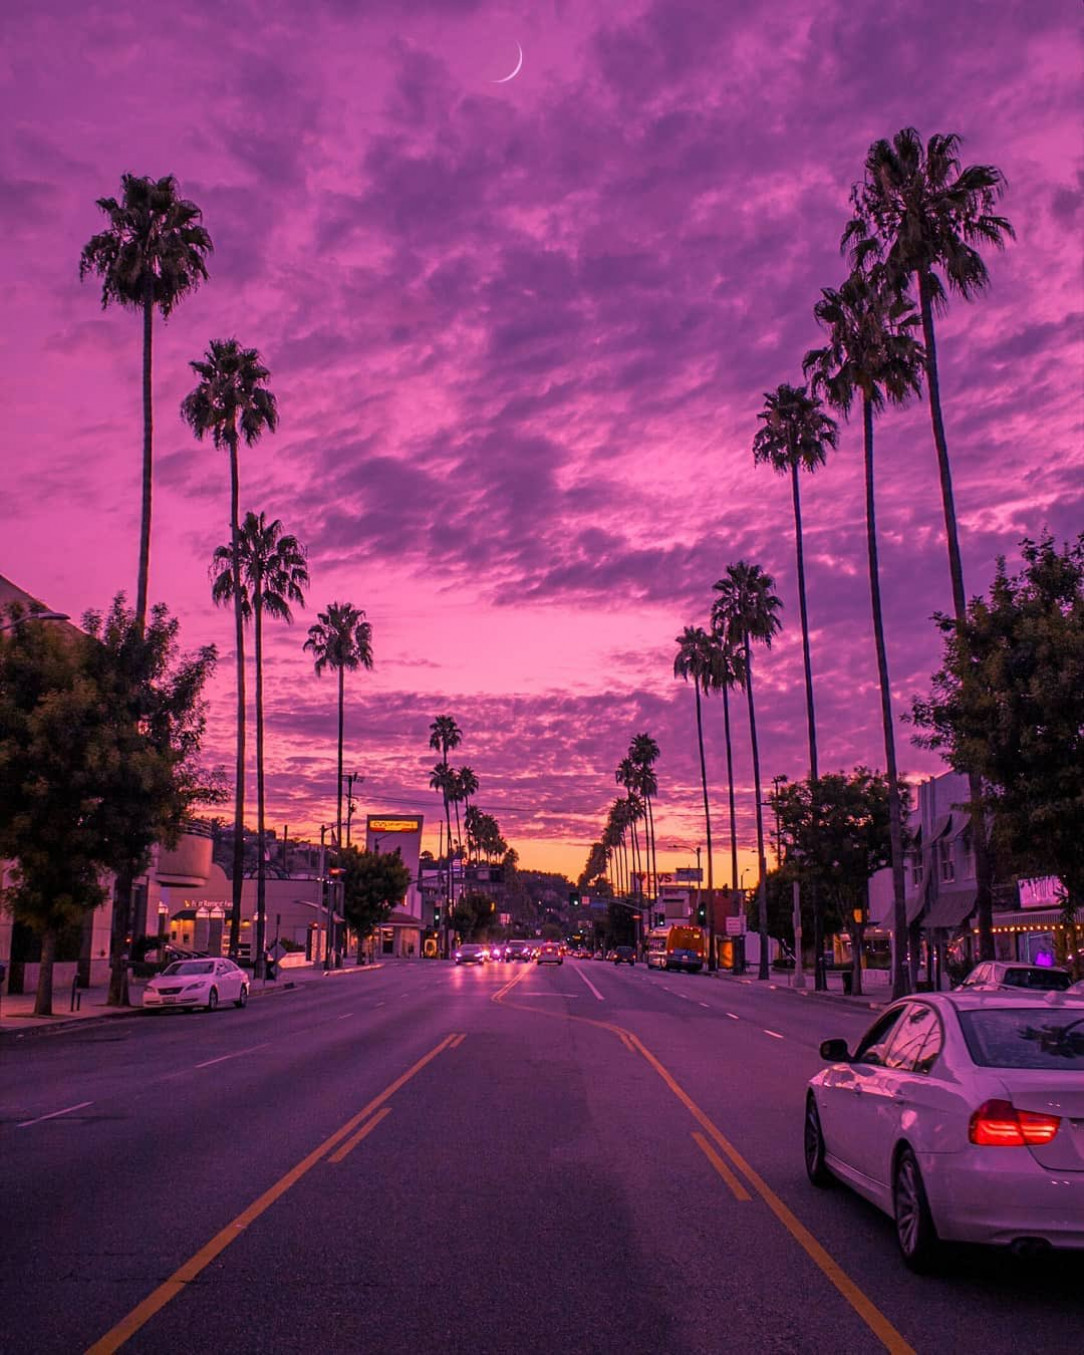 Street view LA style